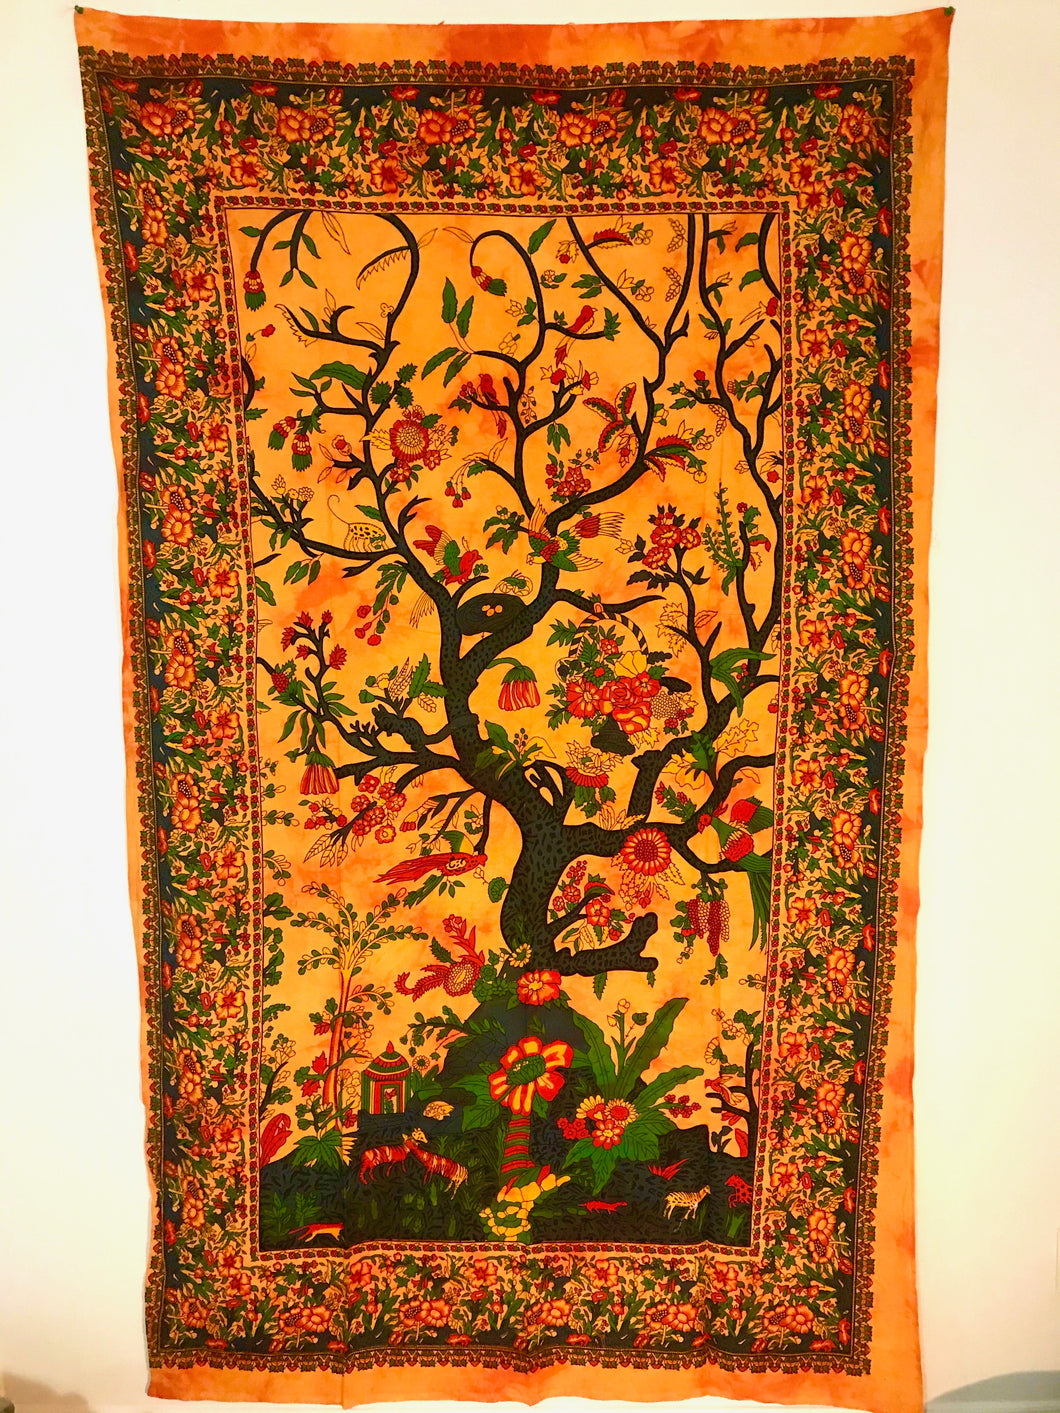 Tree of Life Tapestries/Batik